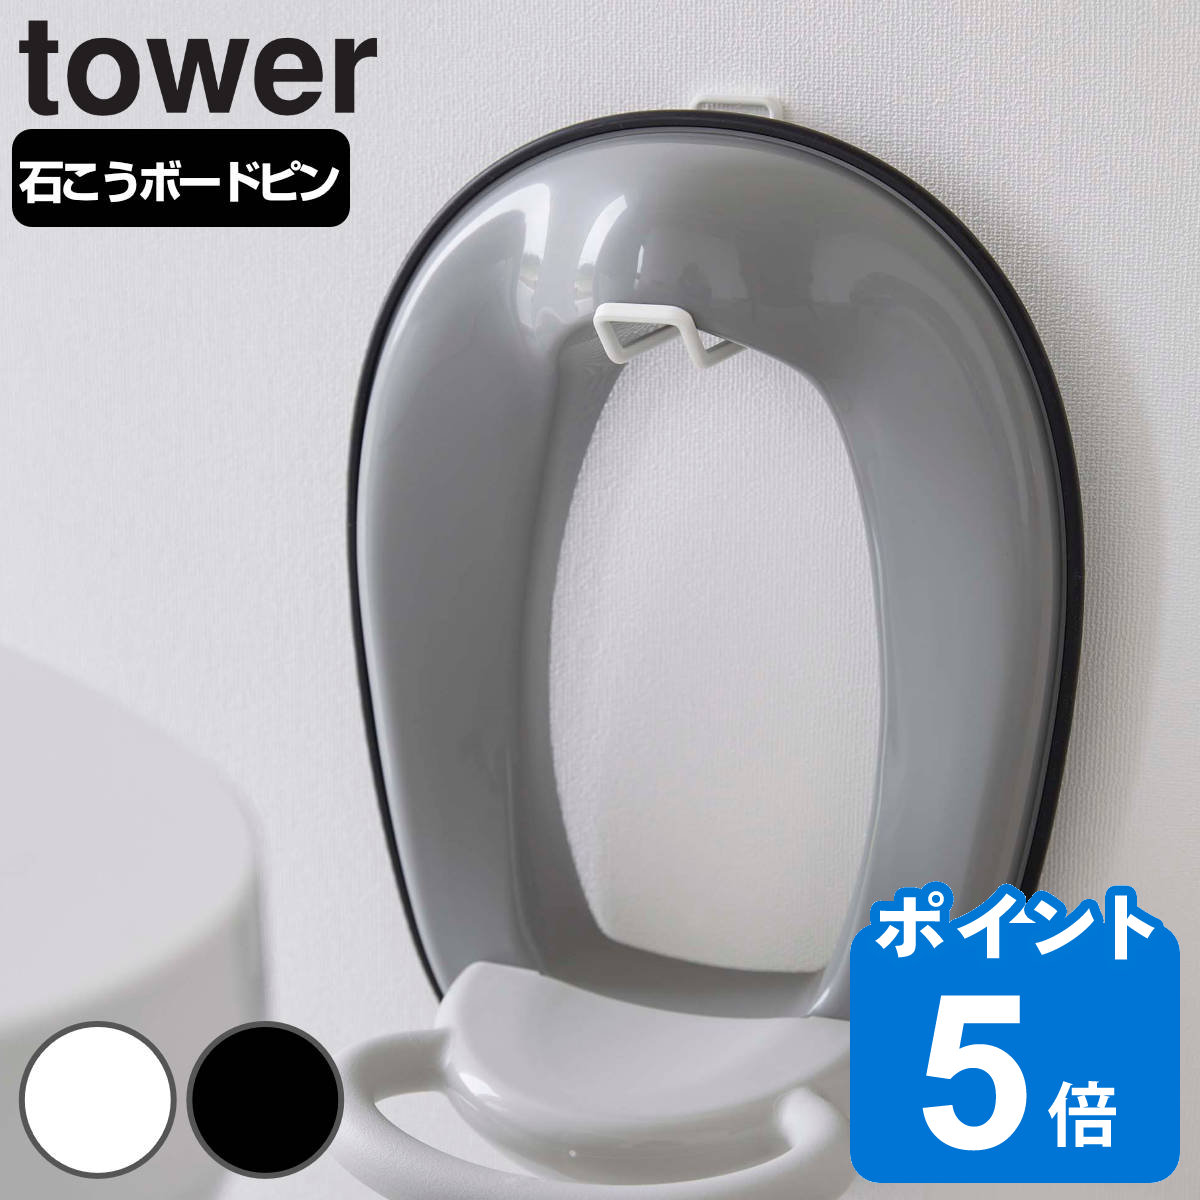 山崎実業 tower ウォールトイレ用品収納フック タワー